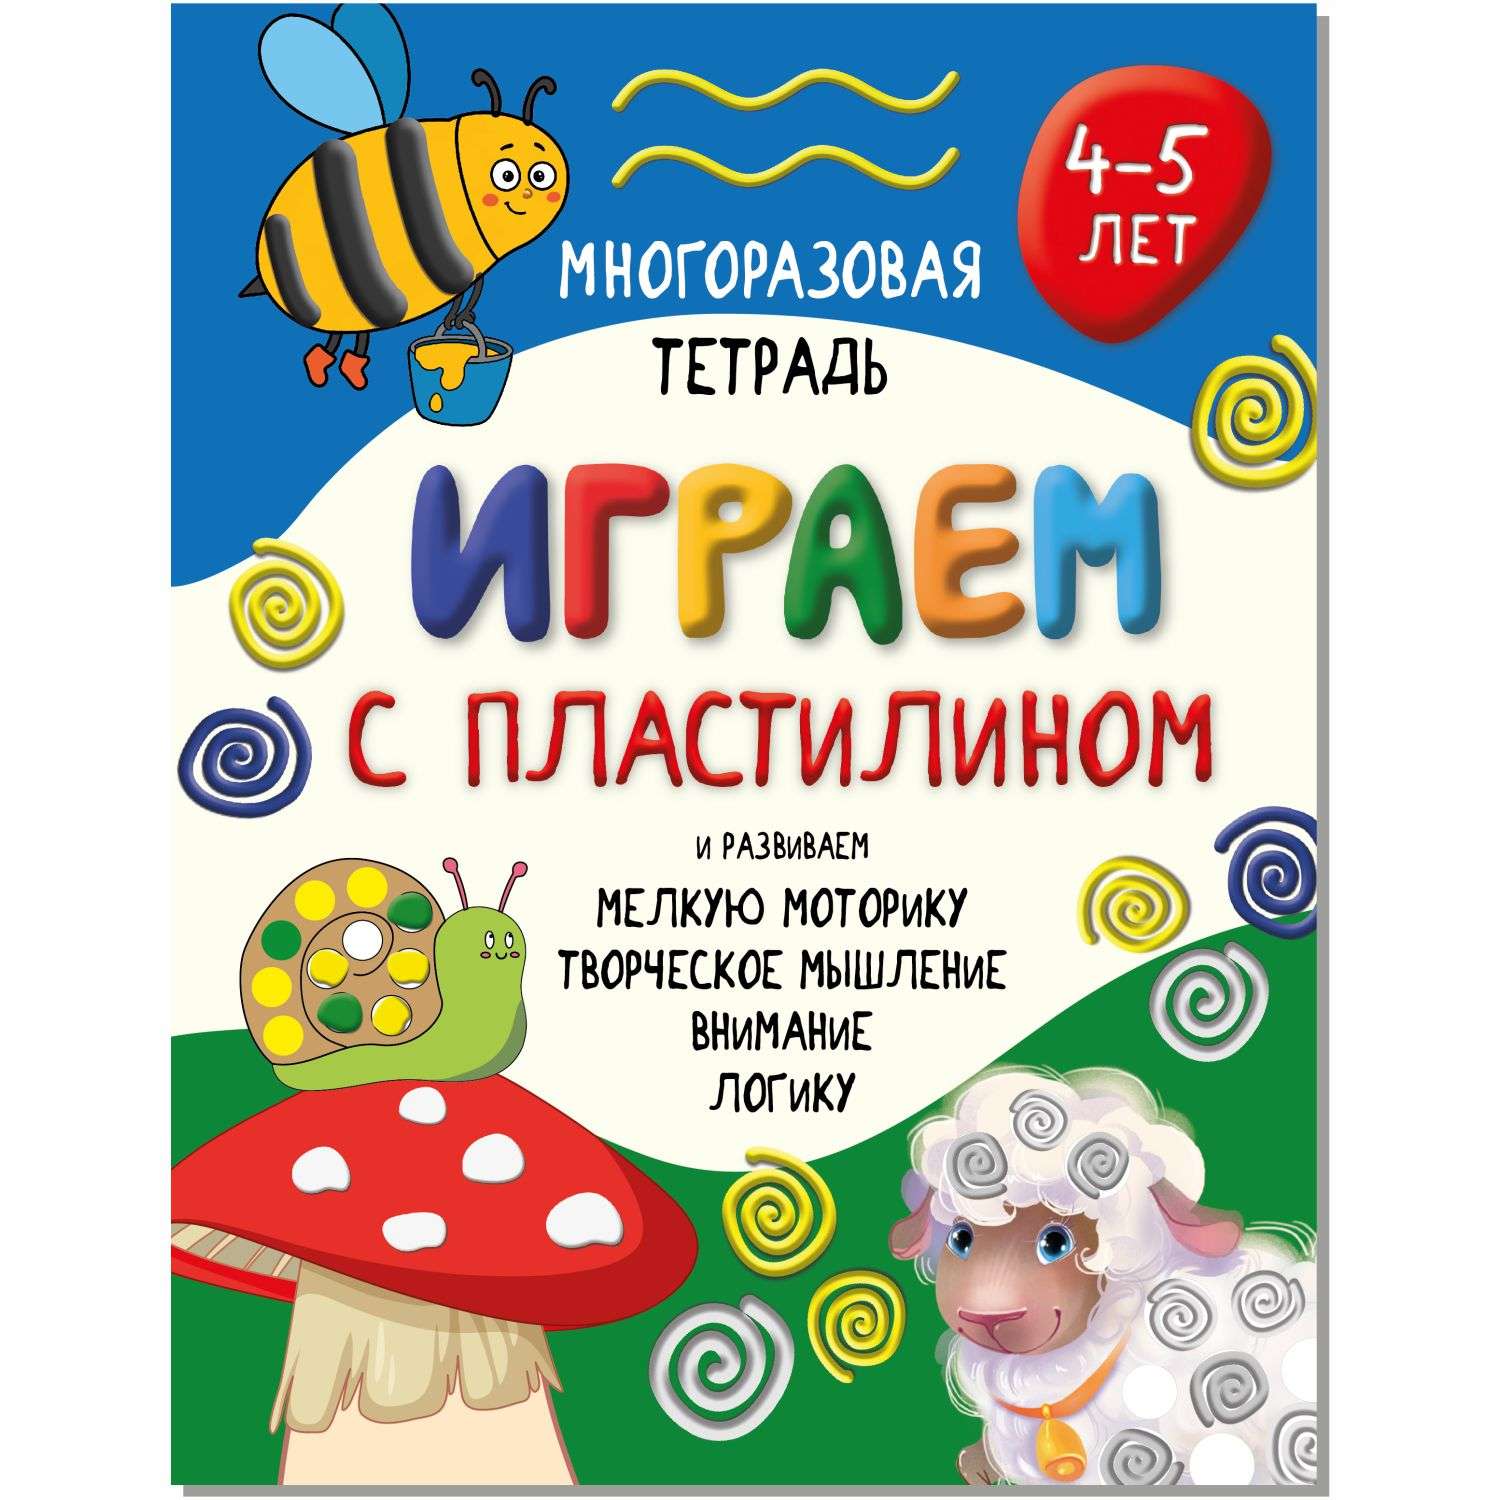 Детская книга BimBiMon Многоразовая тетрадь Играем с пластилином для детей 4-5 лет - фото 1